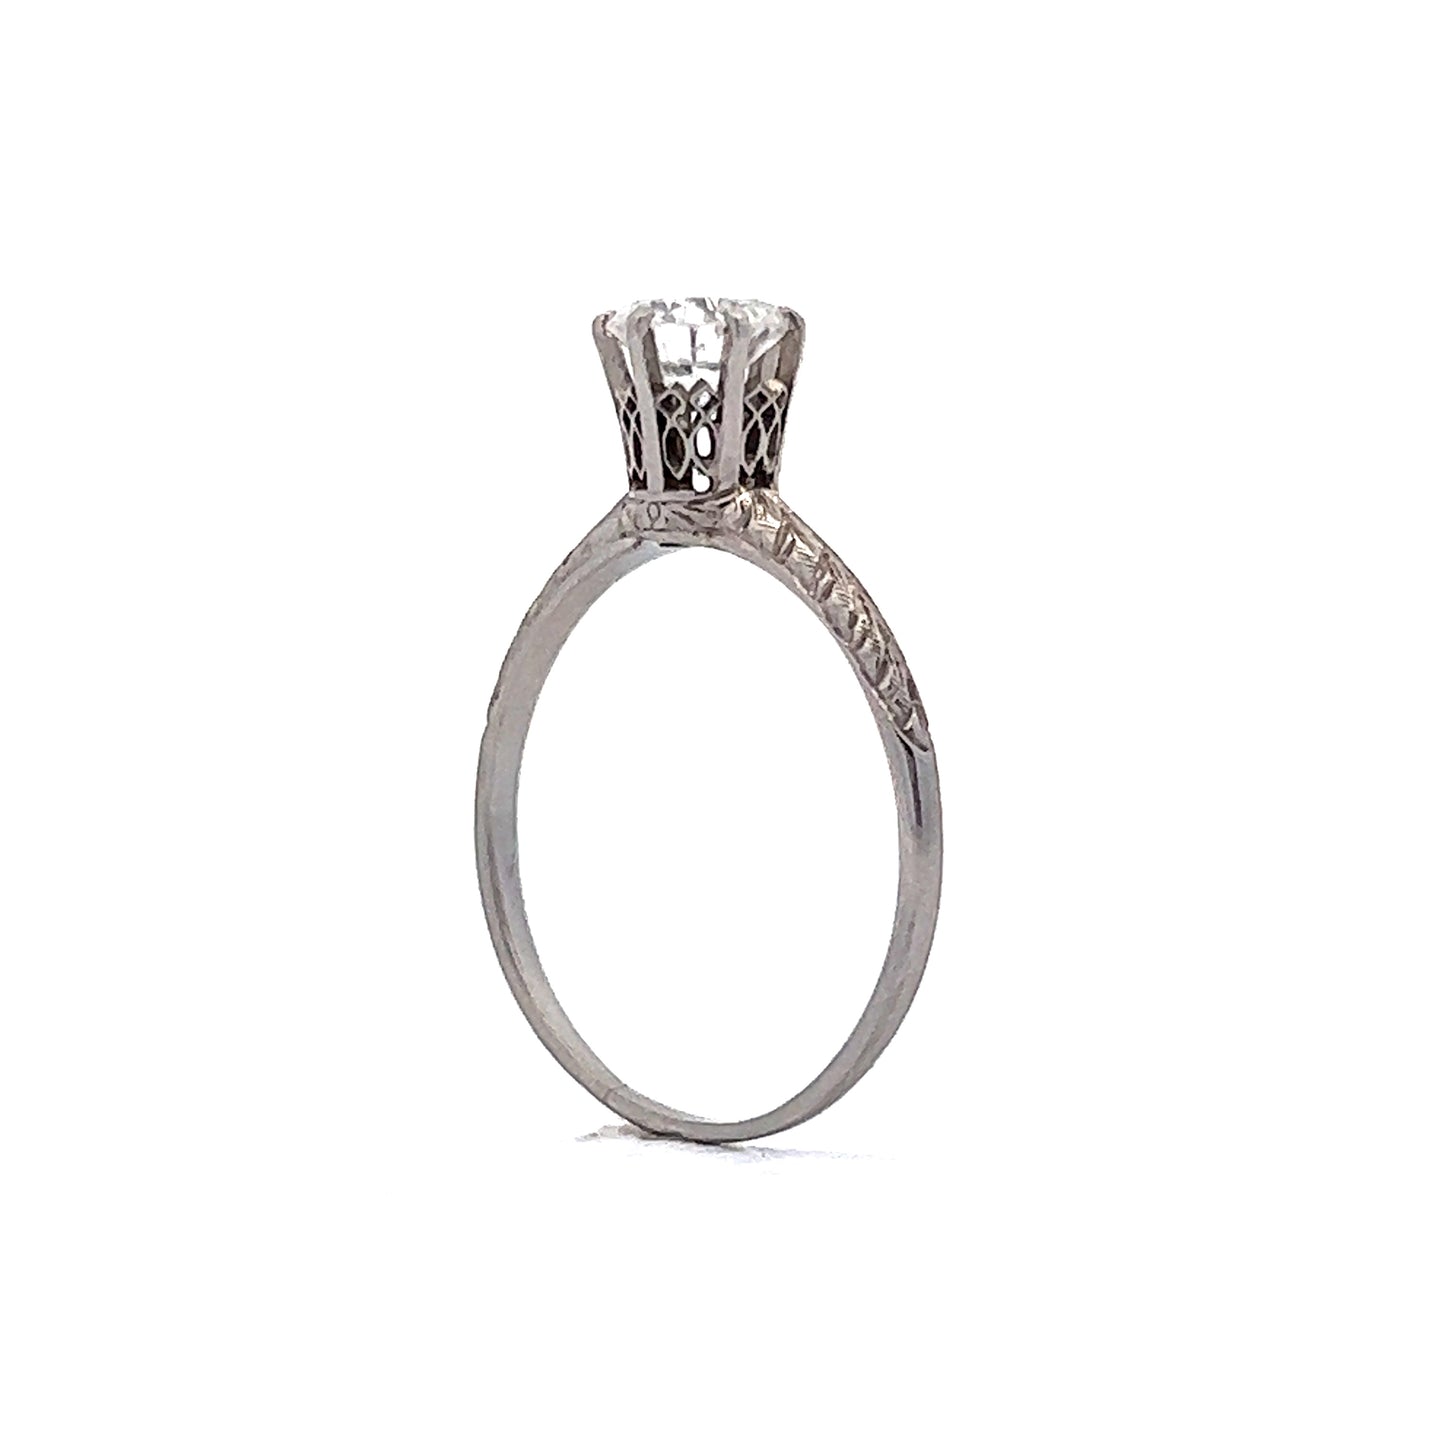 .54 Art Deco Diamond Solitaire Engagement Ring in Platinum